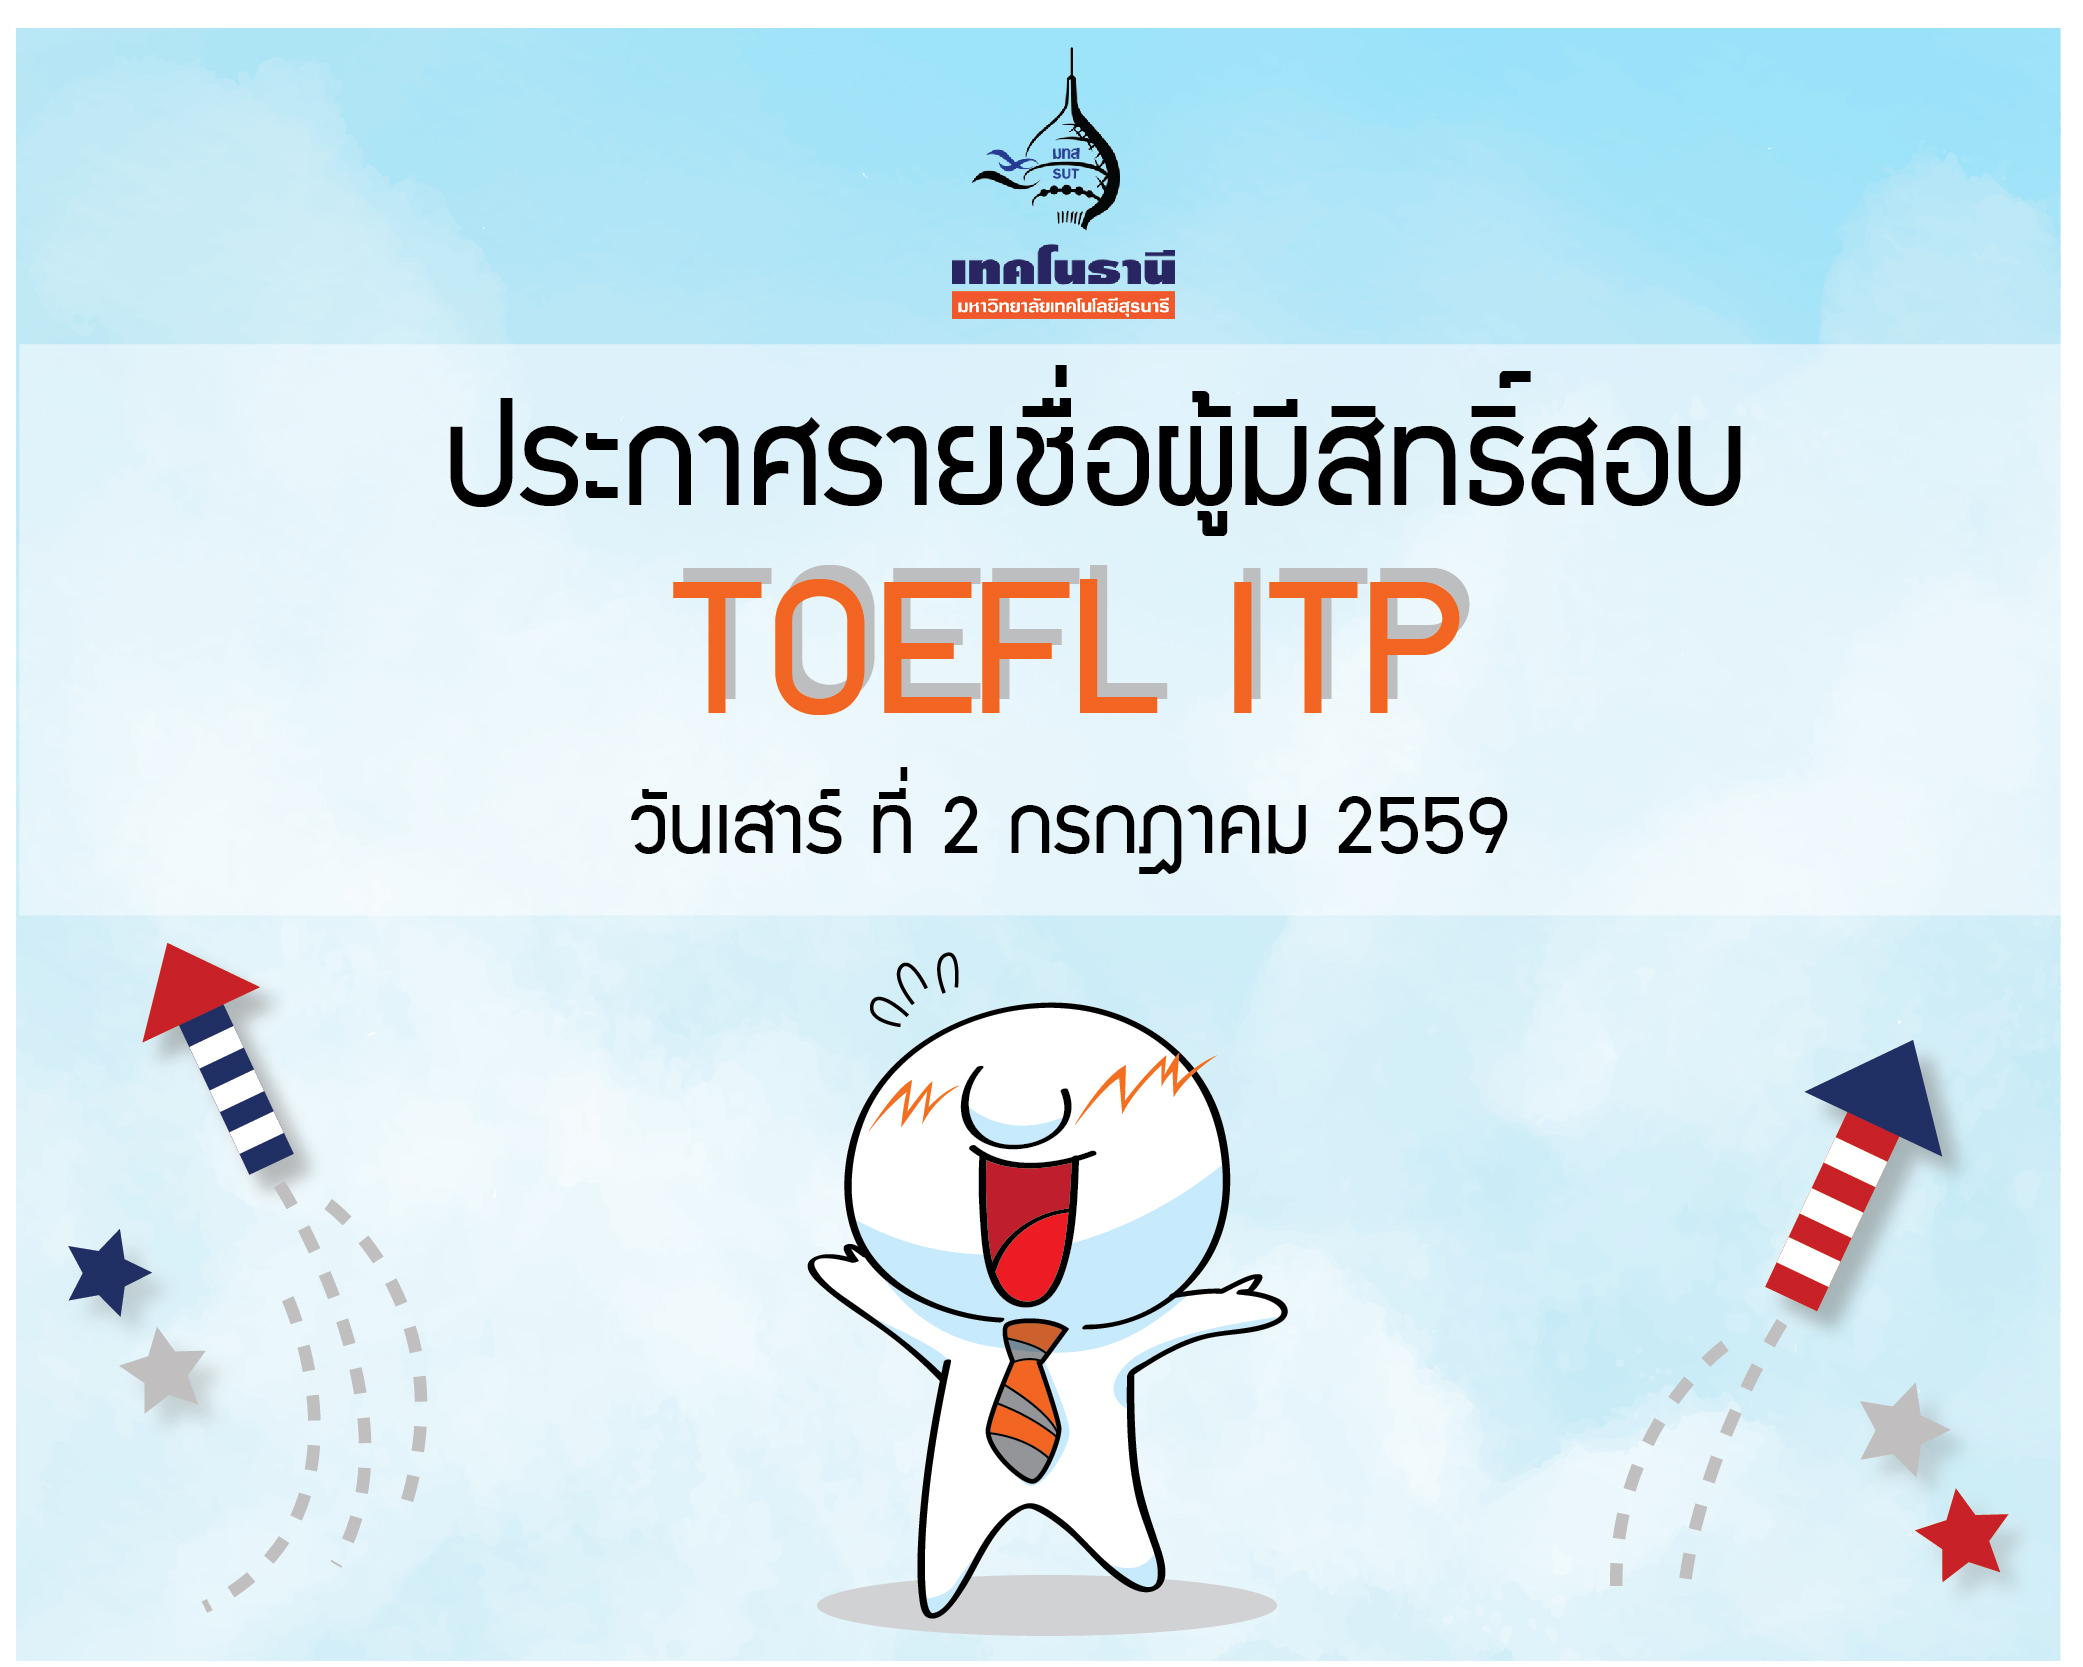 ประกาศรายชื่อผู้มีสิทธิ์สอบ TOEFL ITP วันเสาร์ที่ 2 กรกฎาคม 2559